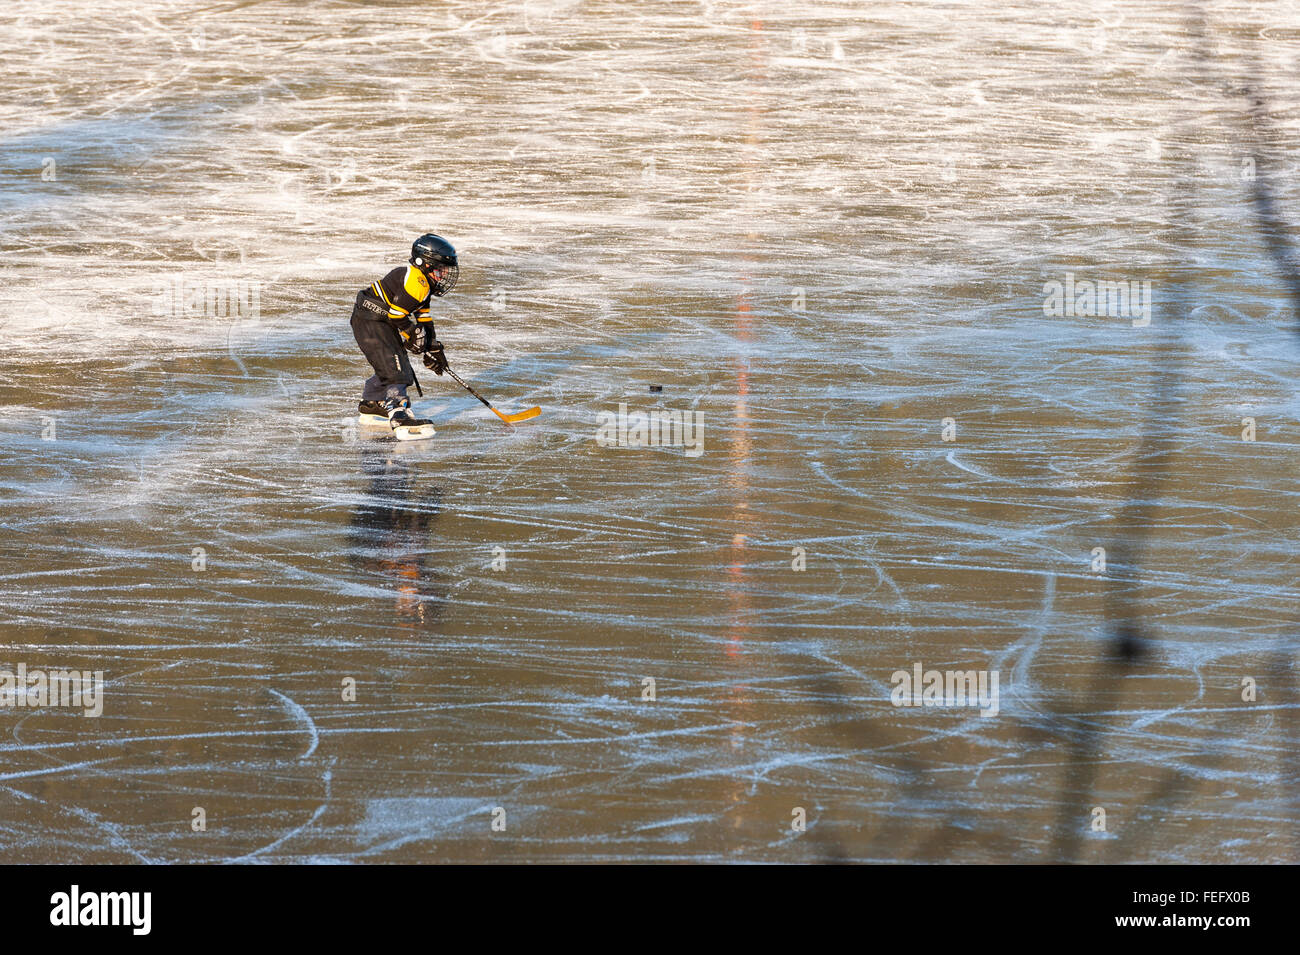 Bambino a giocare a hockey su Swan Lake di ghiaccio in Sitka, Alaska, Stati Uniti d'America. Fotografia di Jeffrey Wickett, fotografia NorthLight LLC, www. n Foto Stock